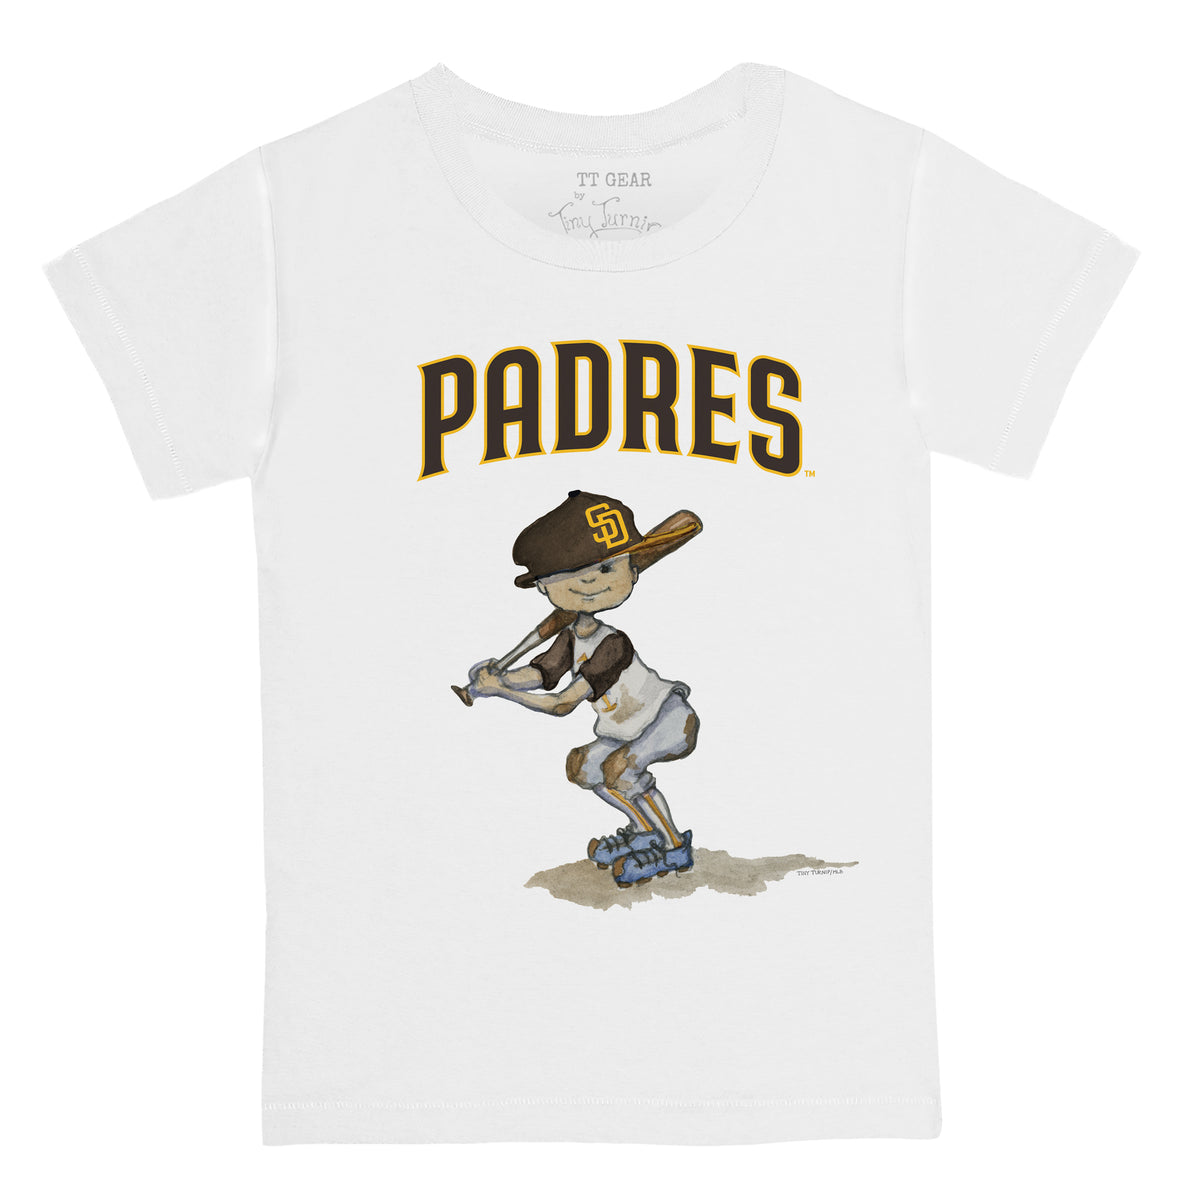 Nike Youth Nike Fernando Tatis Jr. Gold San Diego Padres Player Name &  Number T-Shirt